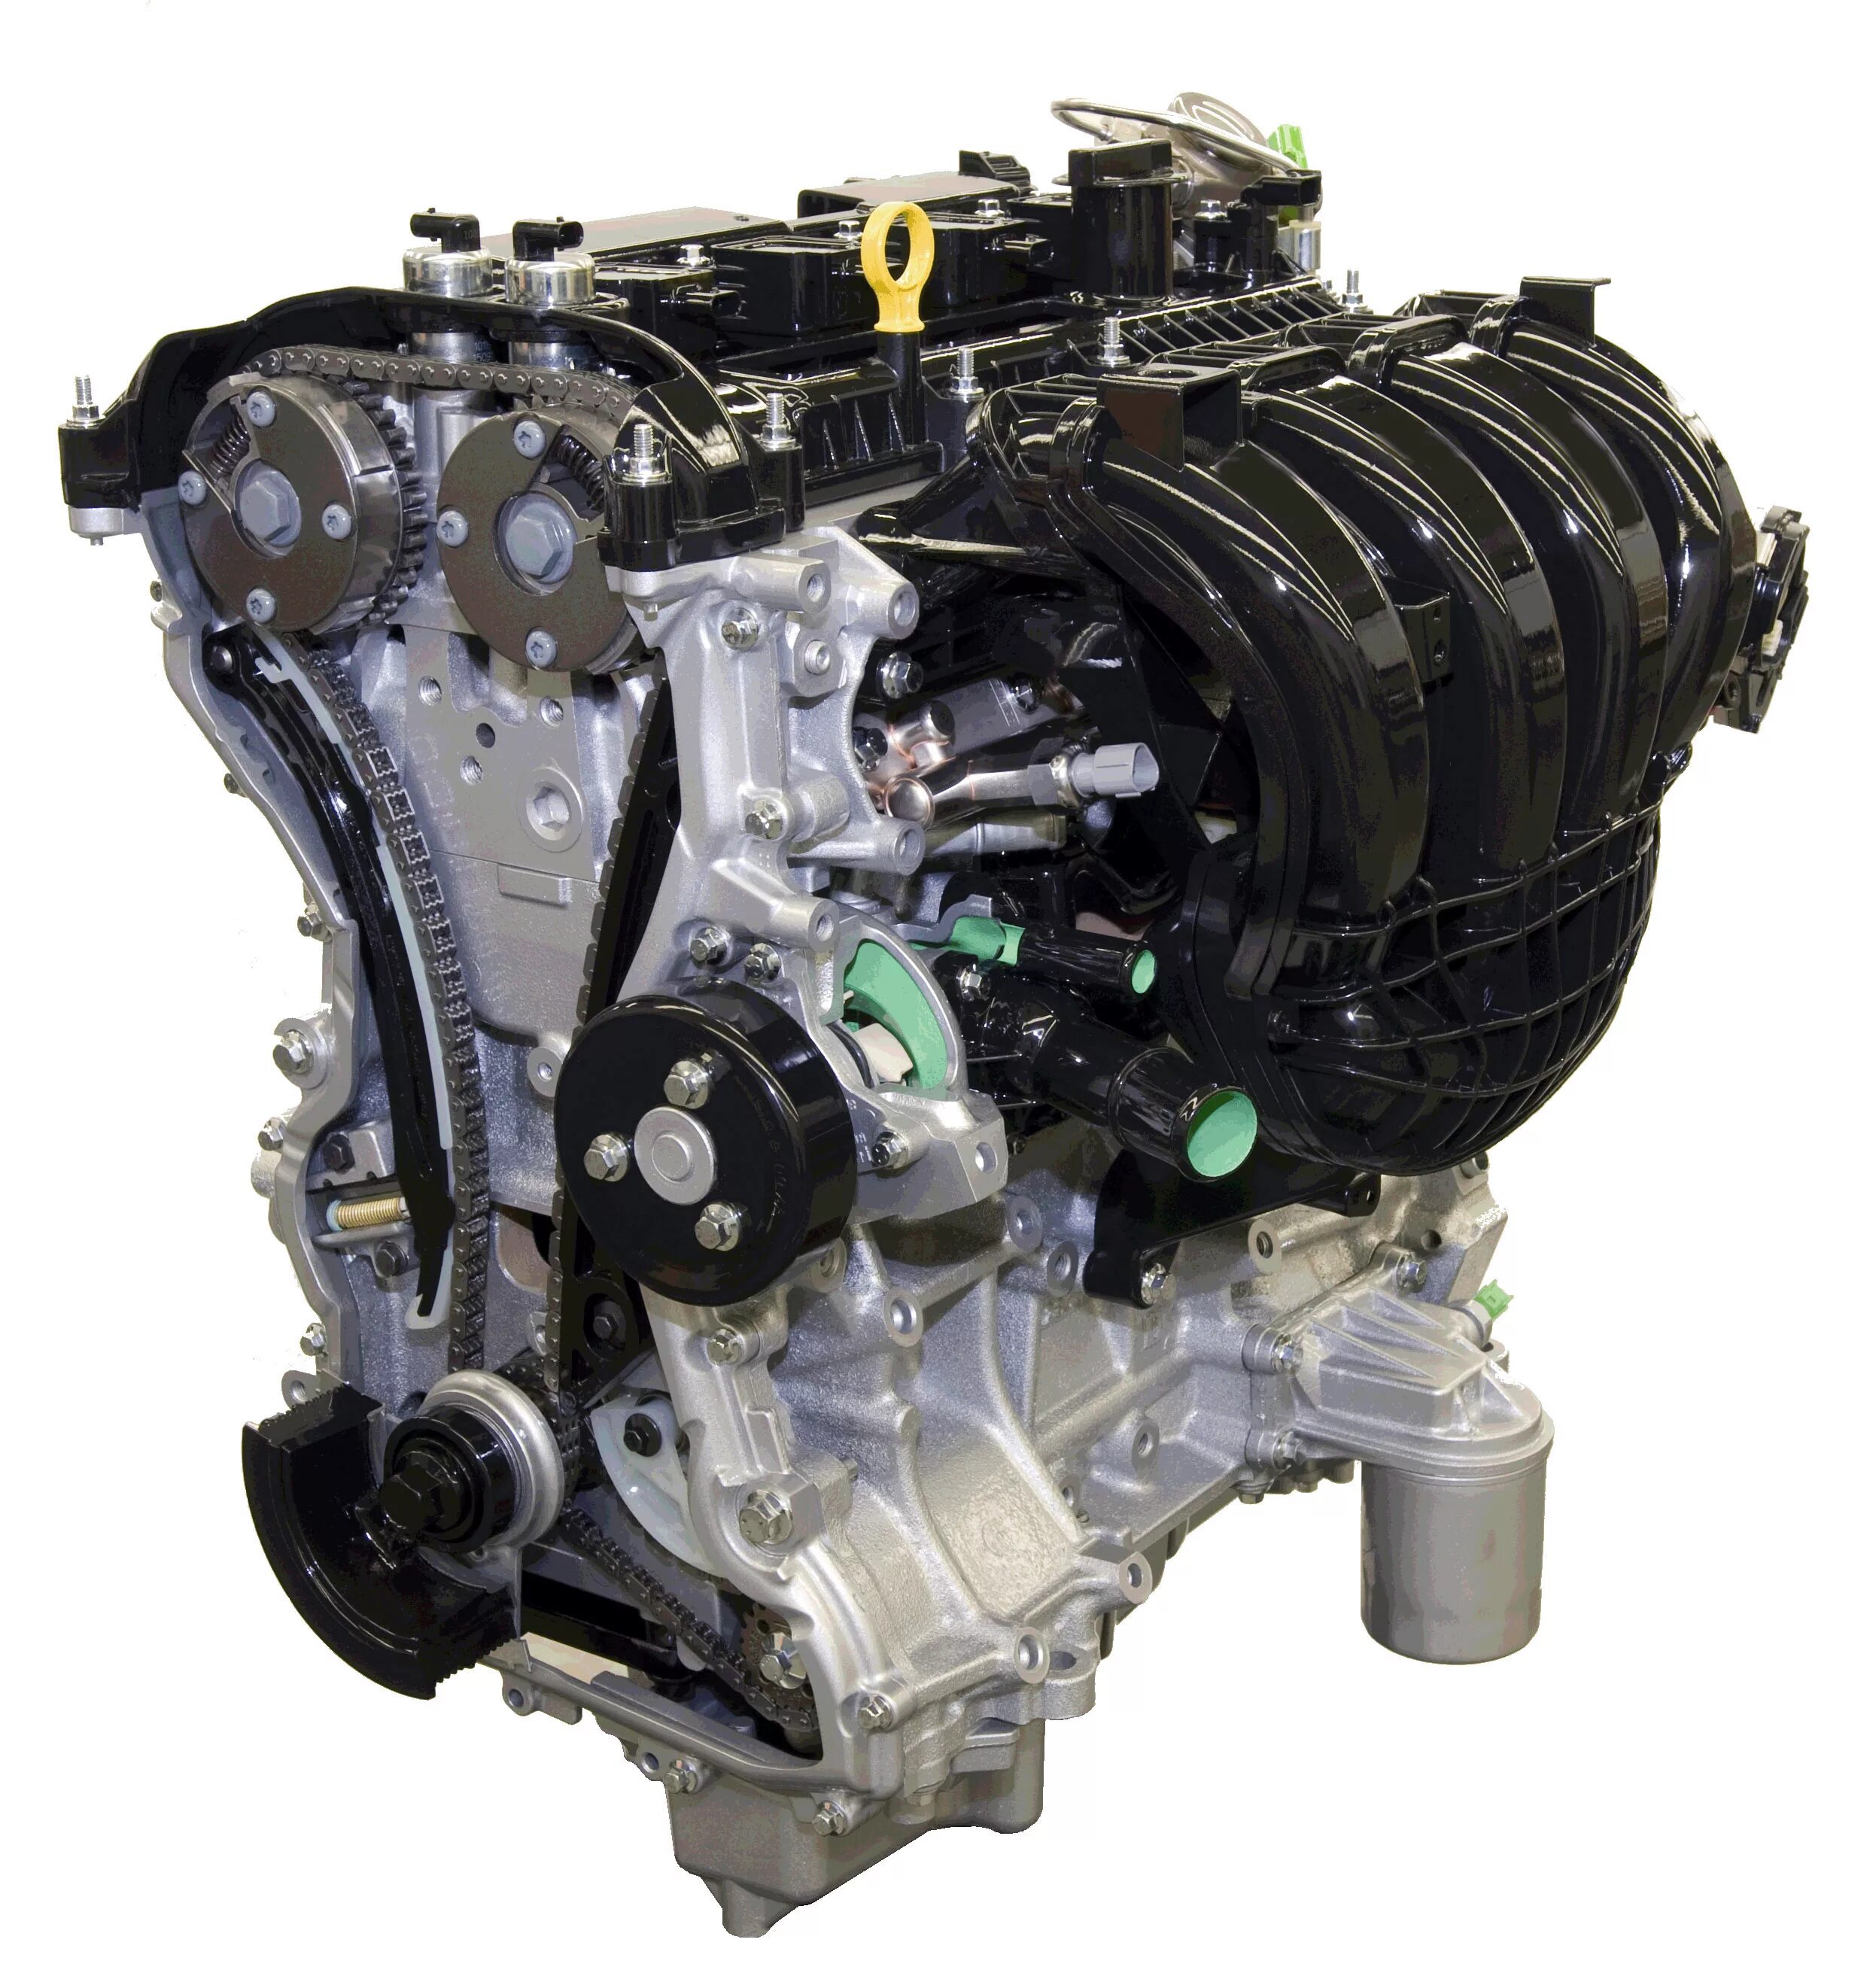 Двигателя л 6 3. Двигатель Форд дюратек 2.0. Двигатель Форд фокус 2 2.0 145. Двигатель Форд фокус 2 2 литра. Двигатель Форд фокус 2 дюратек.